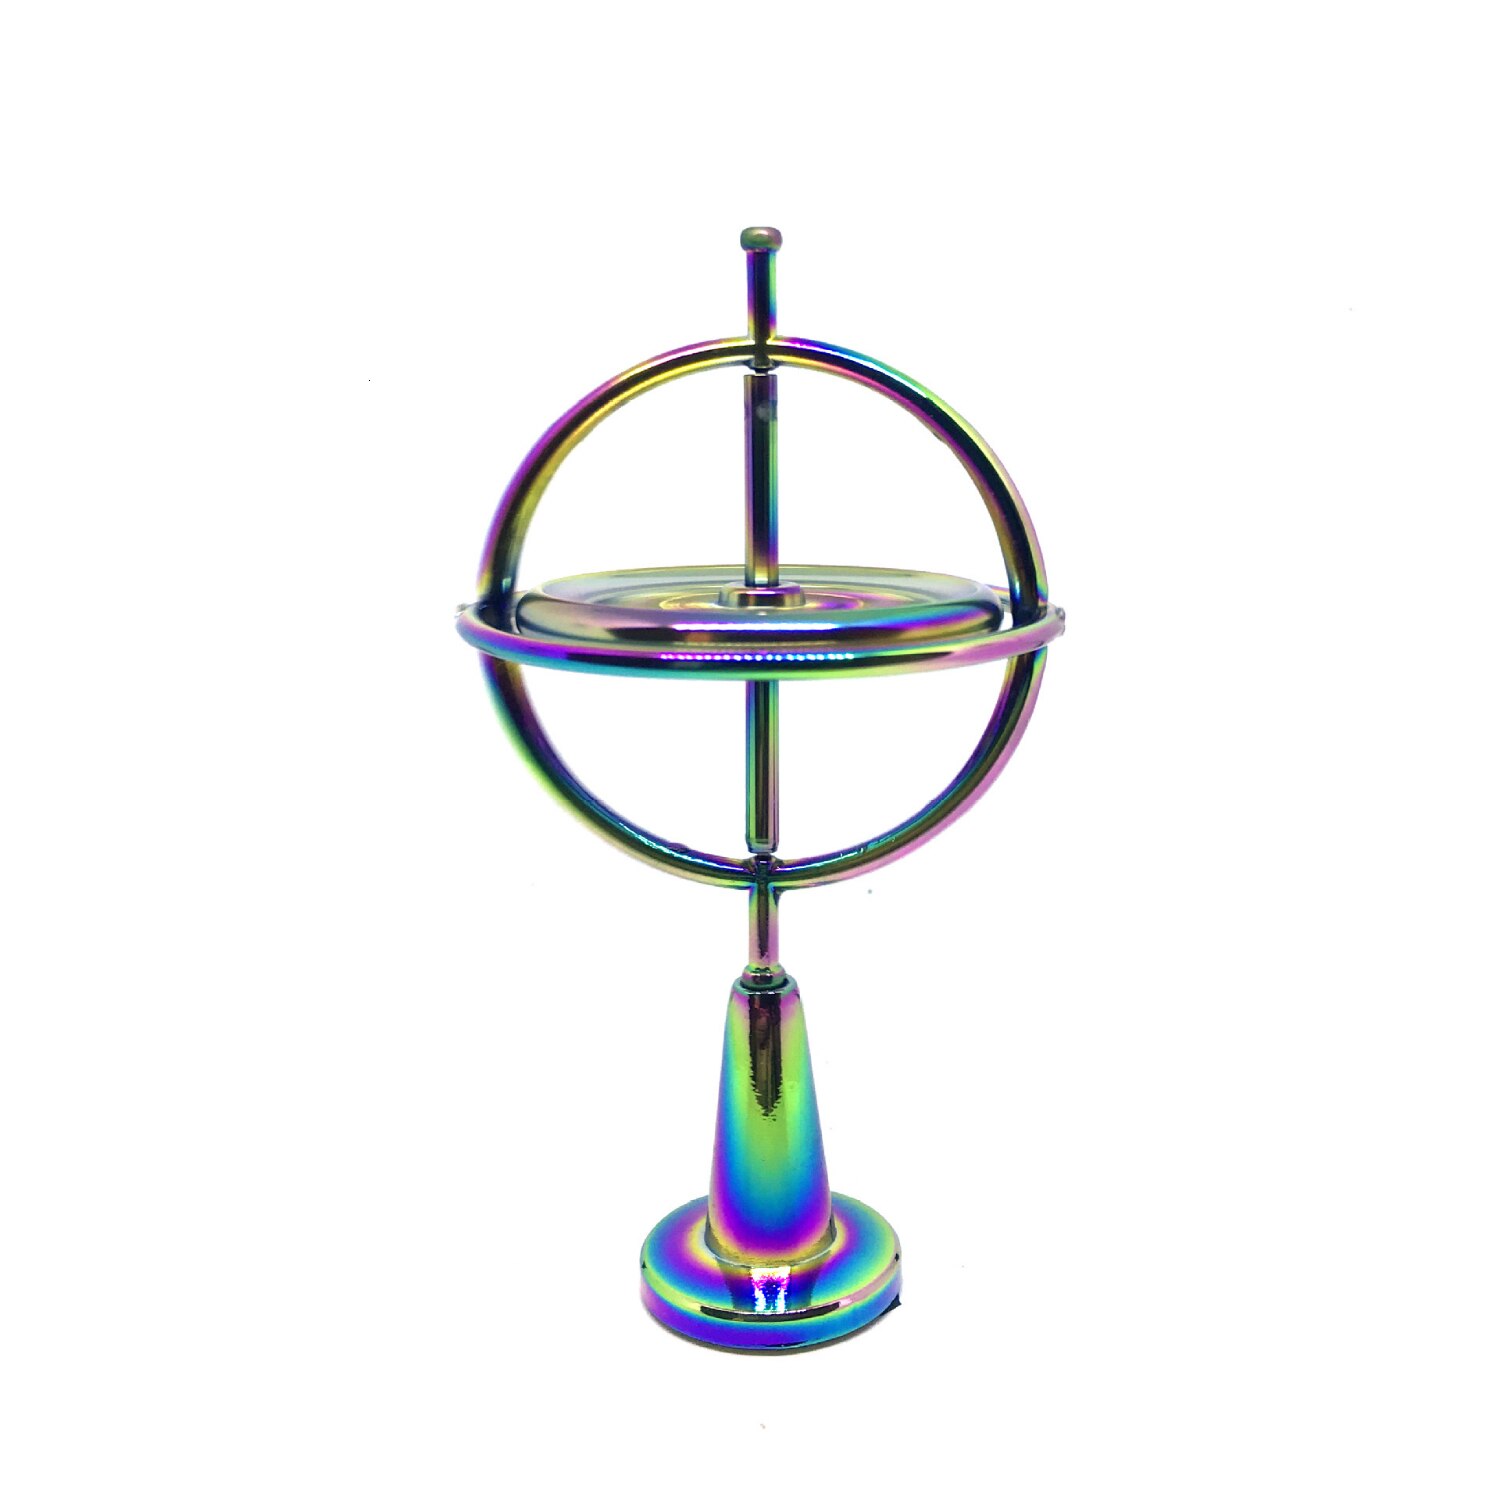 Videnskabelig pædagogisk metal finger gyroskop gyro top tryk lindre klassisk legetøj traditionelt læringslegetøj til børn: Farve